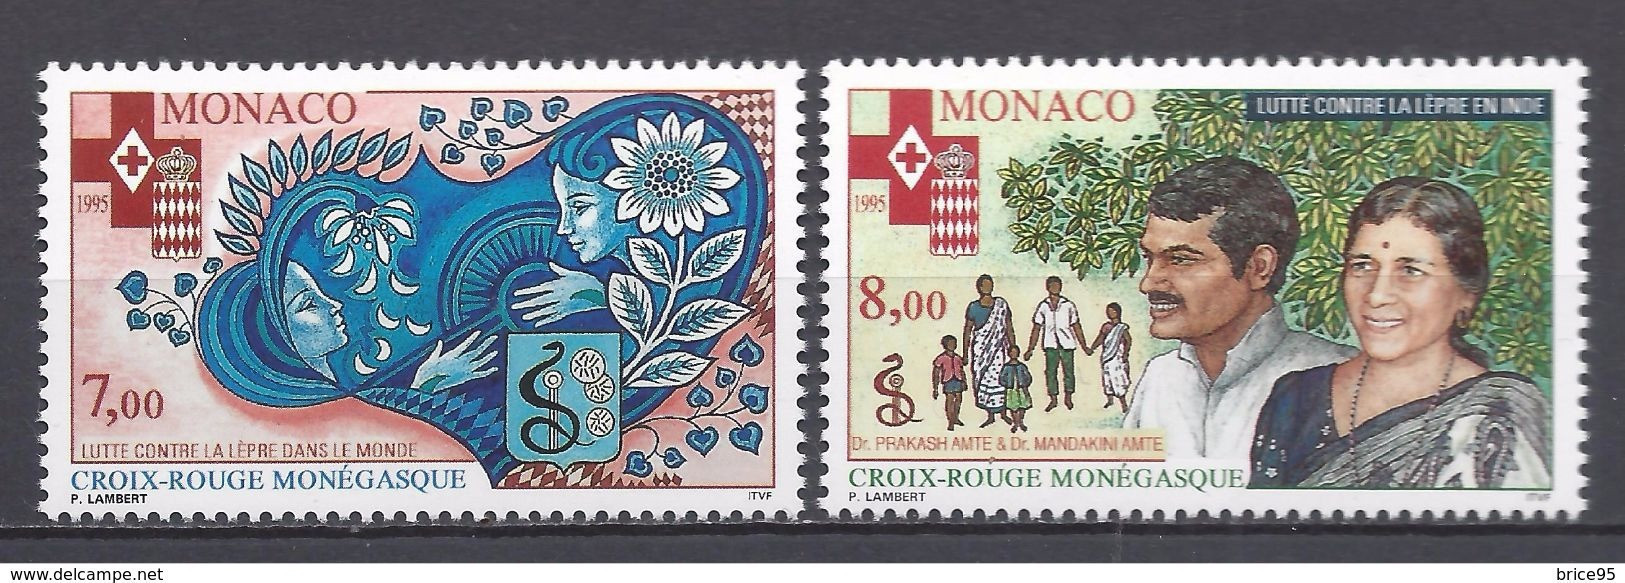 Monaco - YT N° 2000 Et 2001 ** - Neuf Sans Charnière - 1995 - Ongebruikt